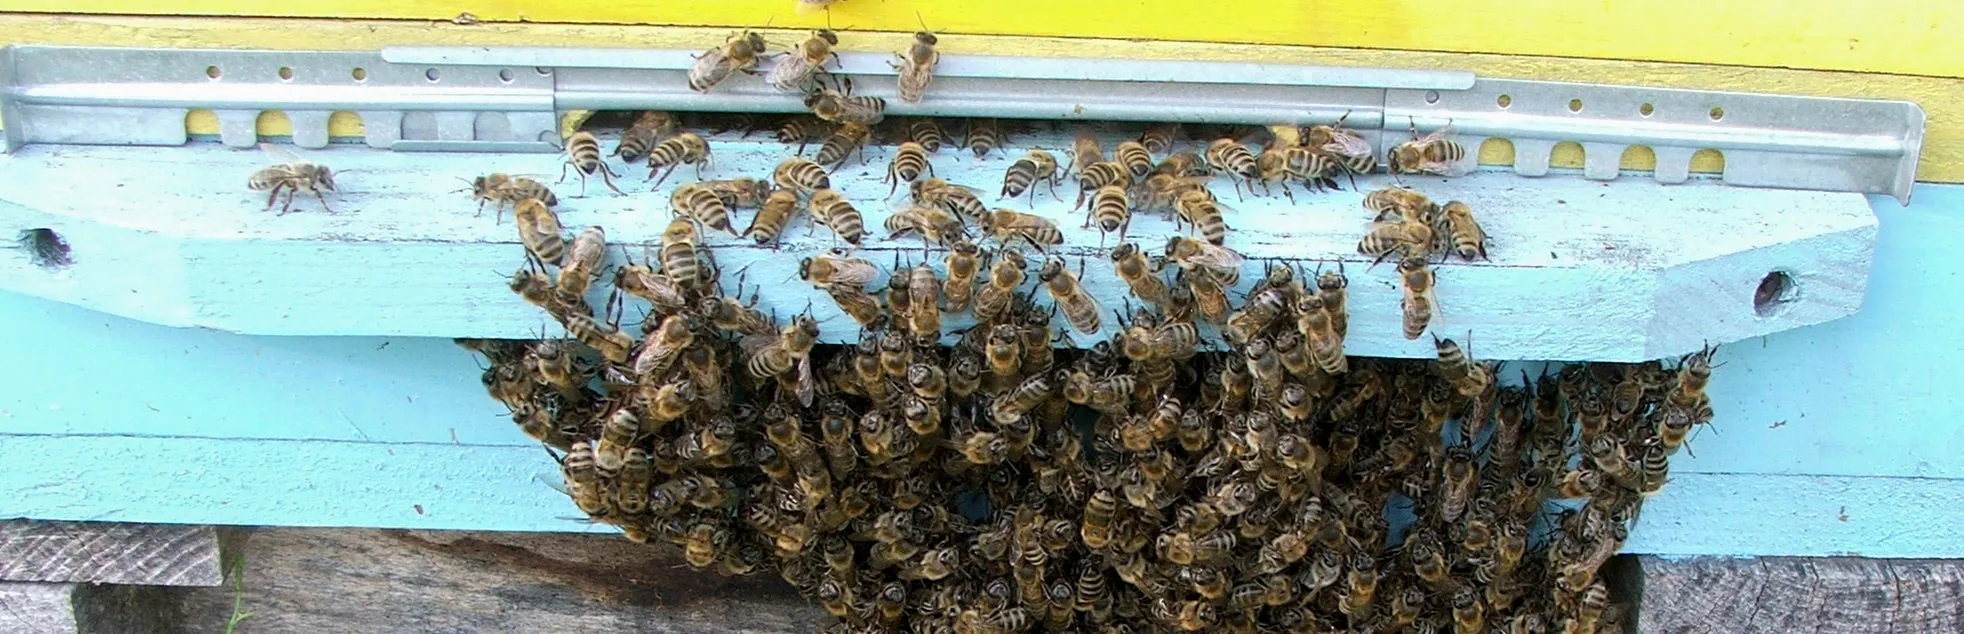 Pčele ispred košnice formirale bradu